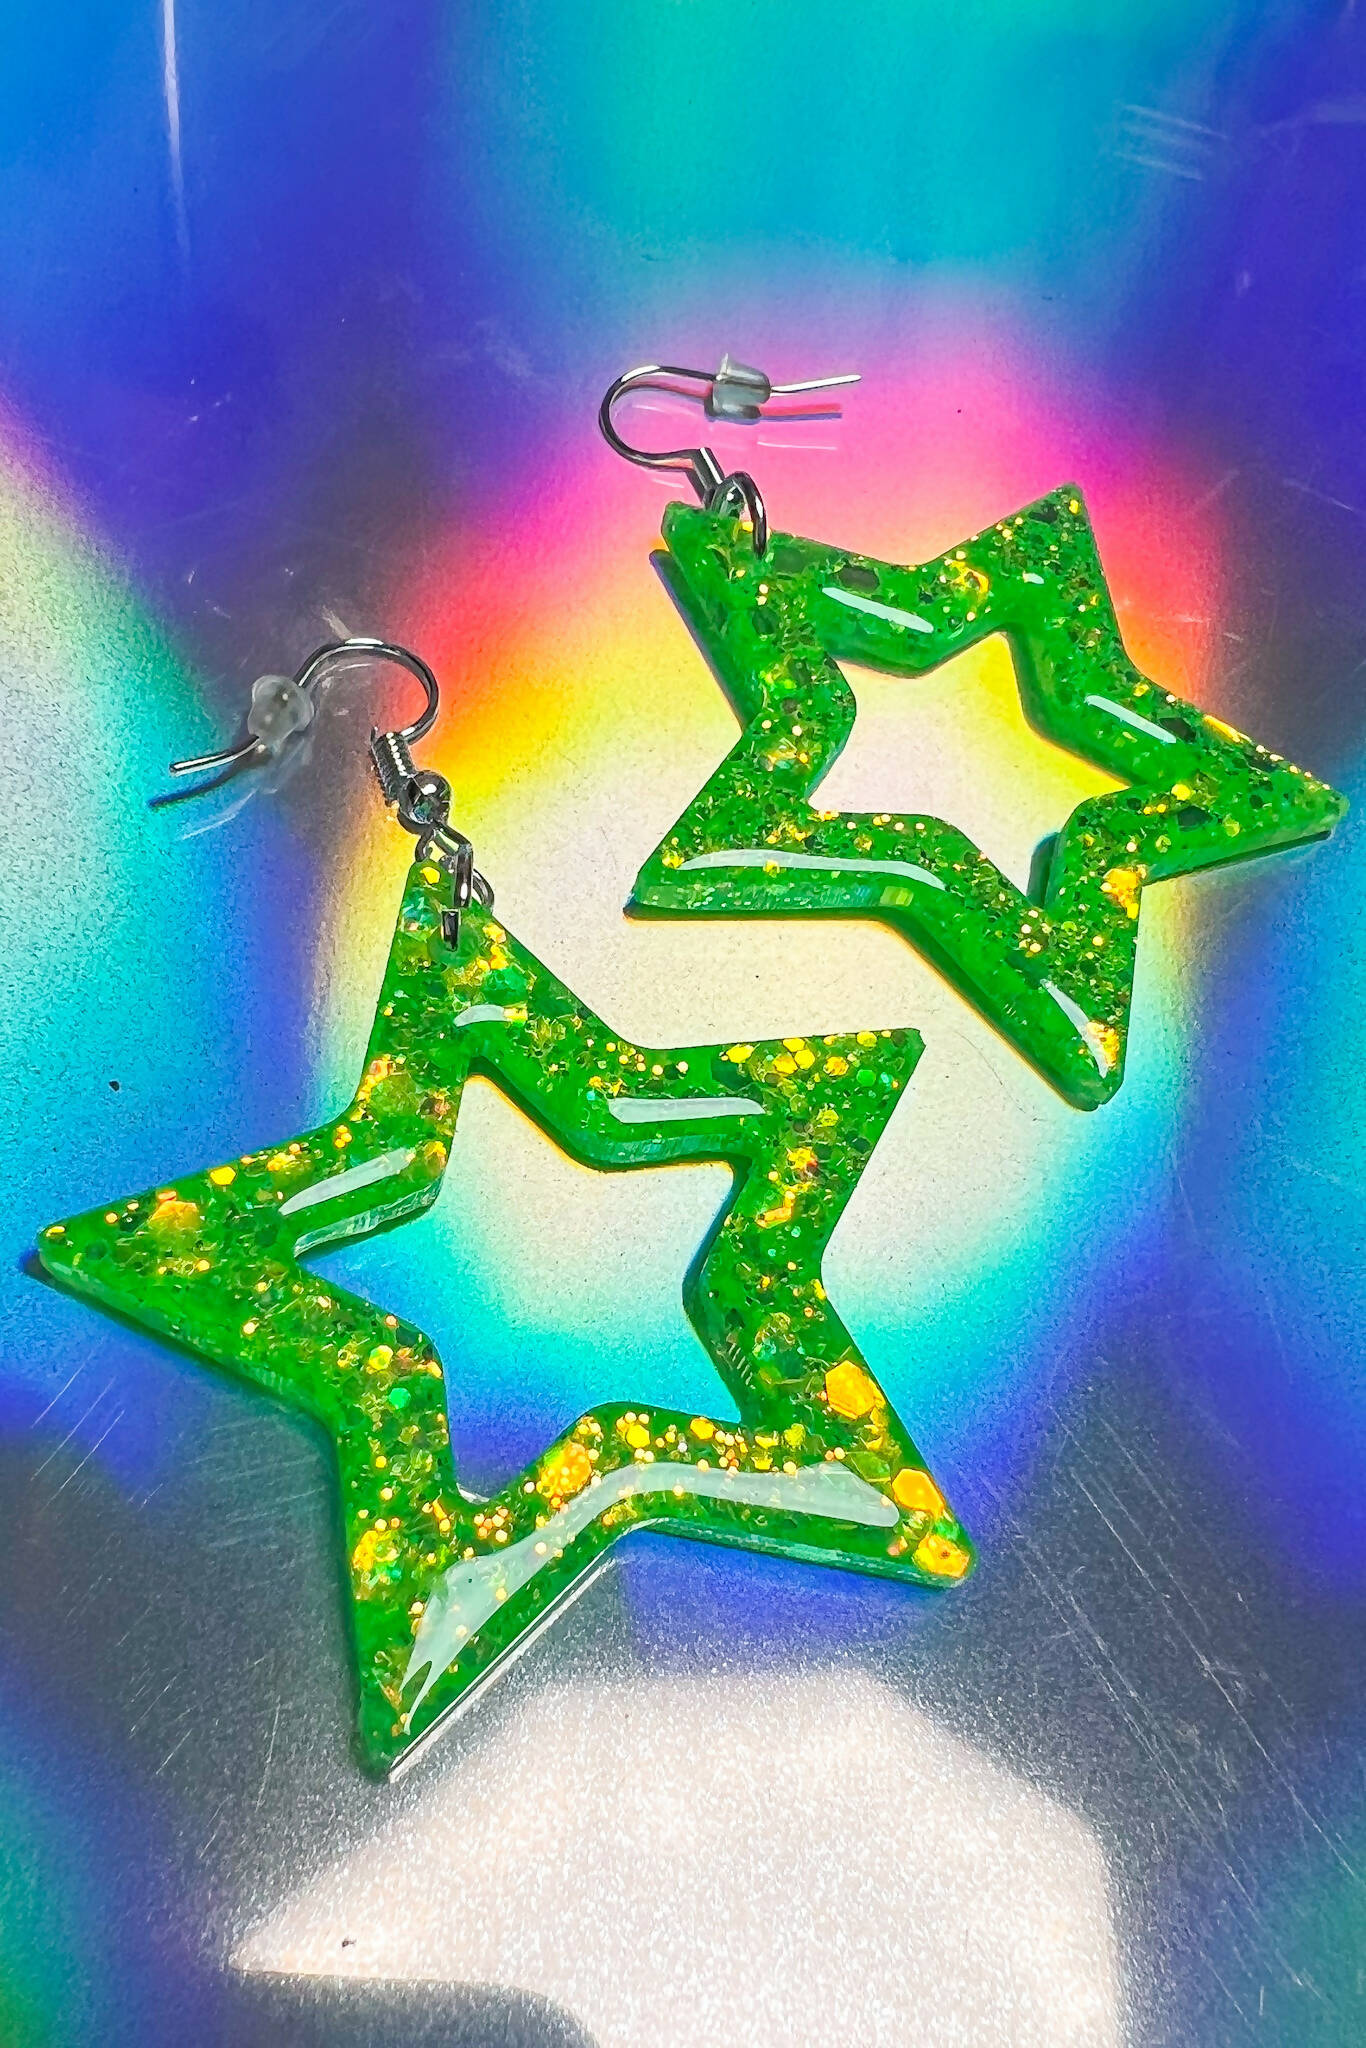 Star Shaped Resin Earrings Lime Green Earrings Iridescent Glitter Earrings Neon Festival Earrings | Rave &amp; Festival Fashion